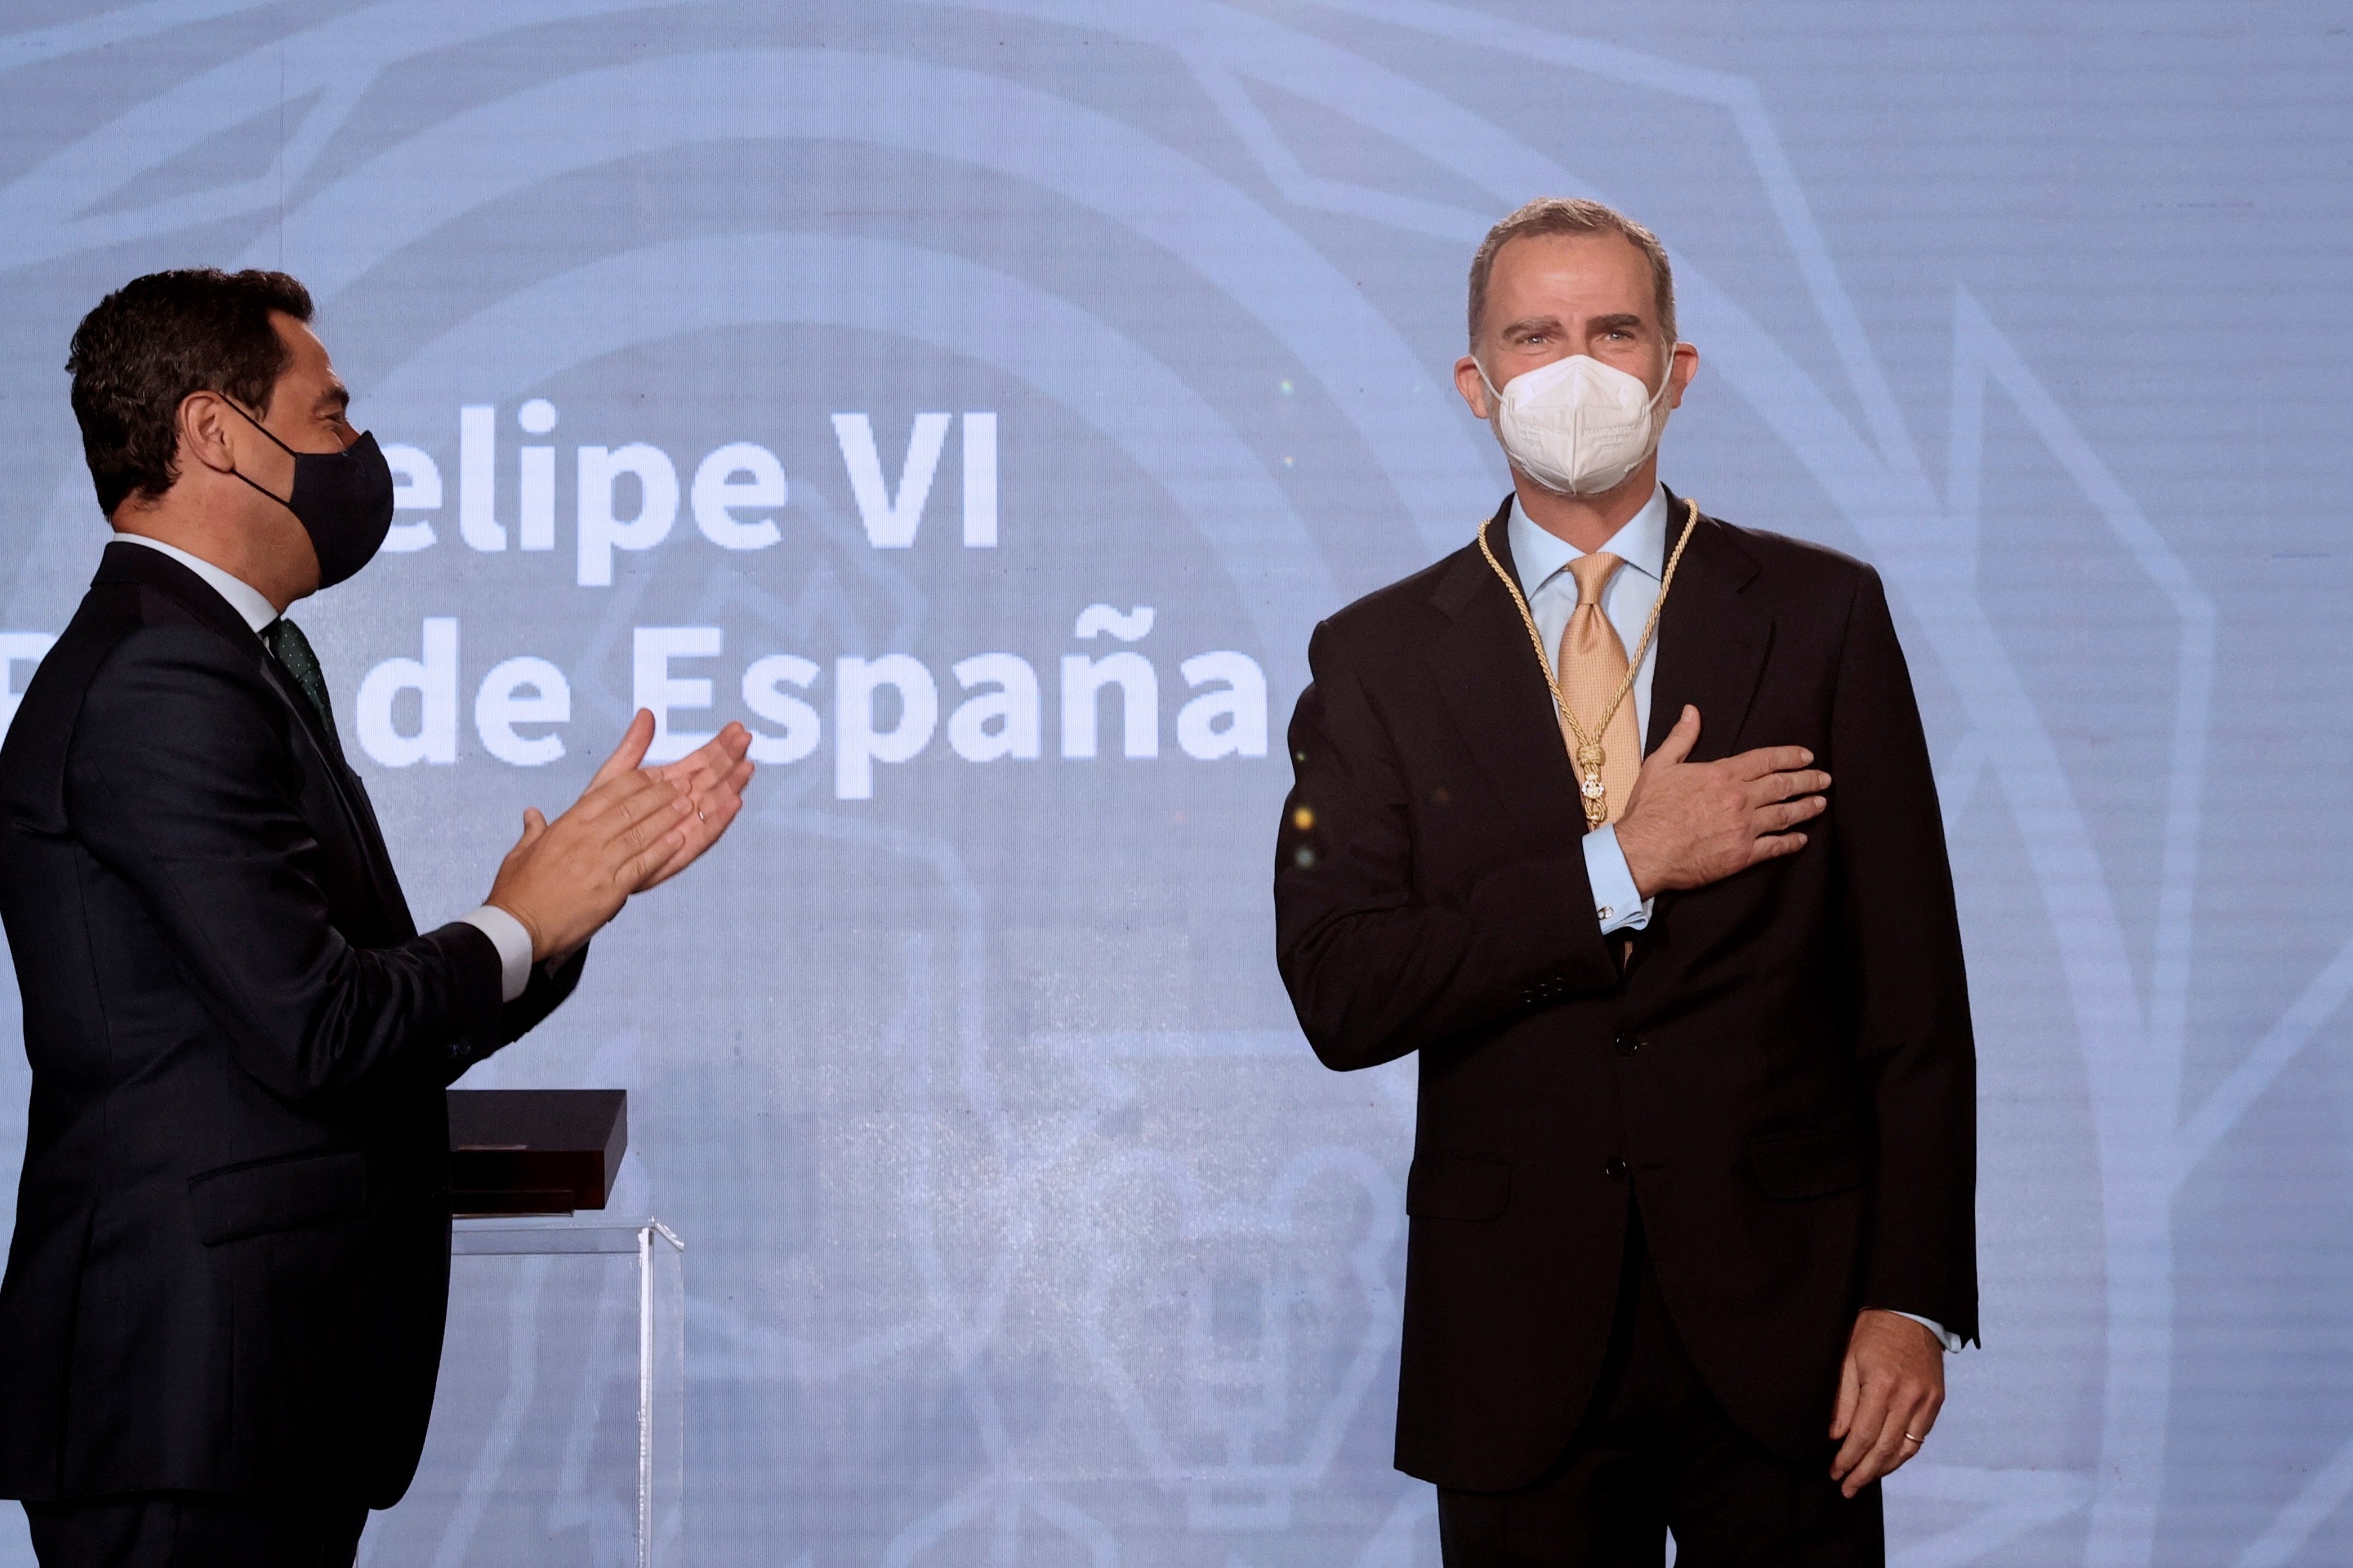 Andalucía galardona a Felipe VI por su "defensa de la unidad de España"